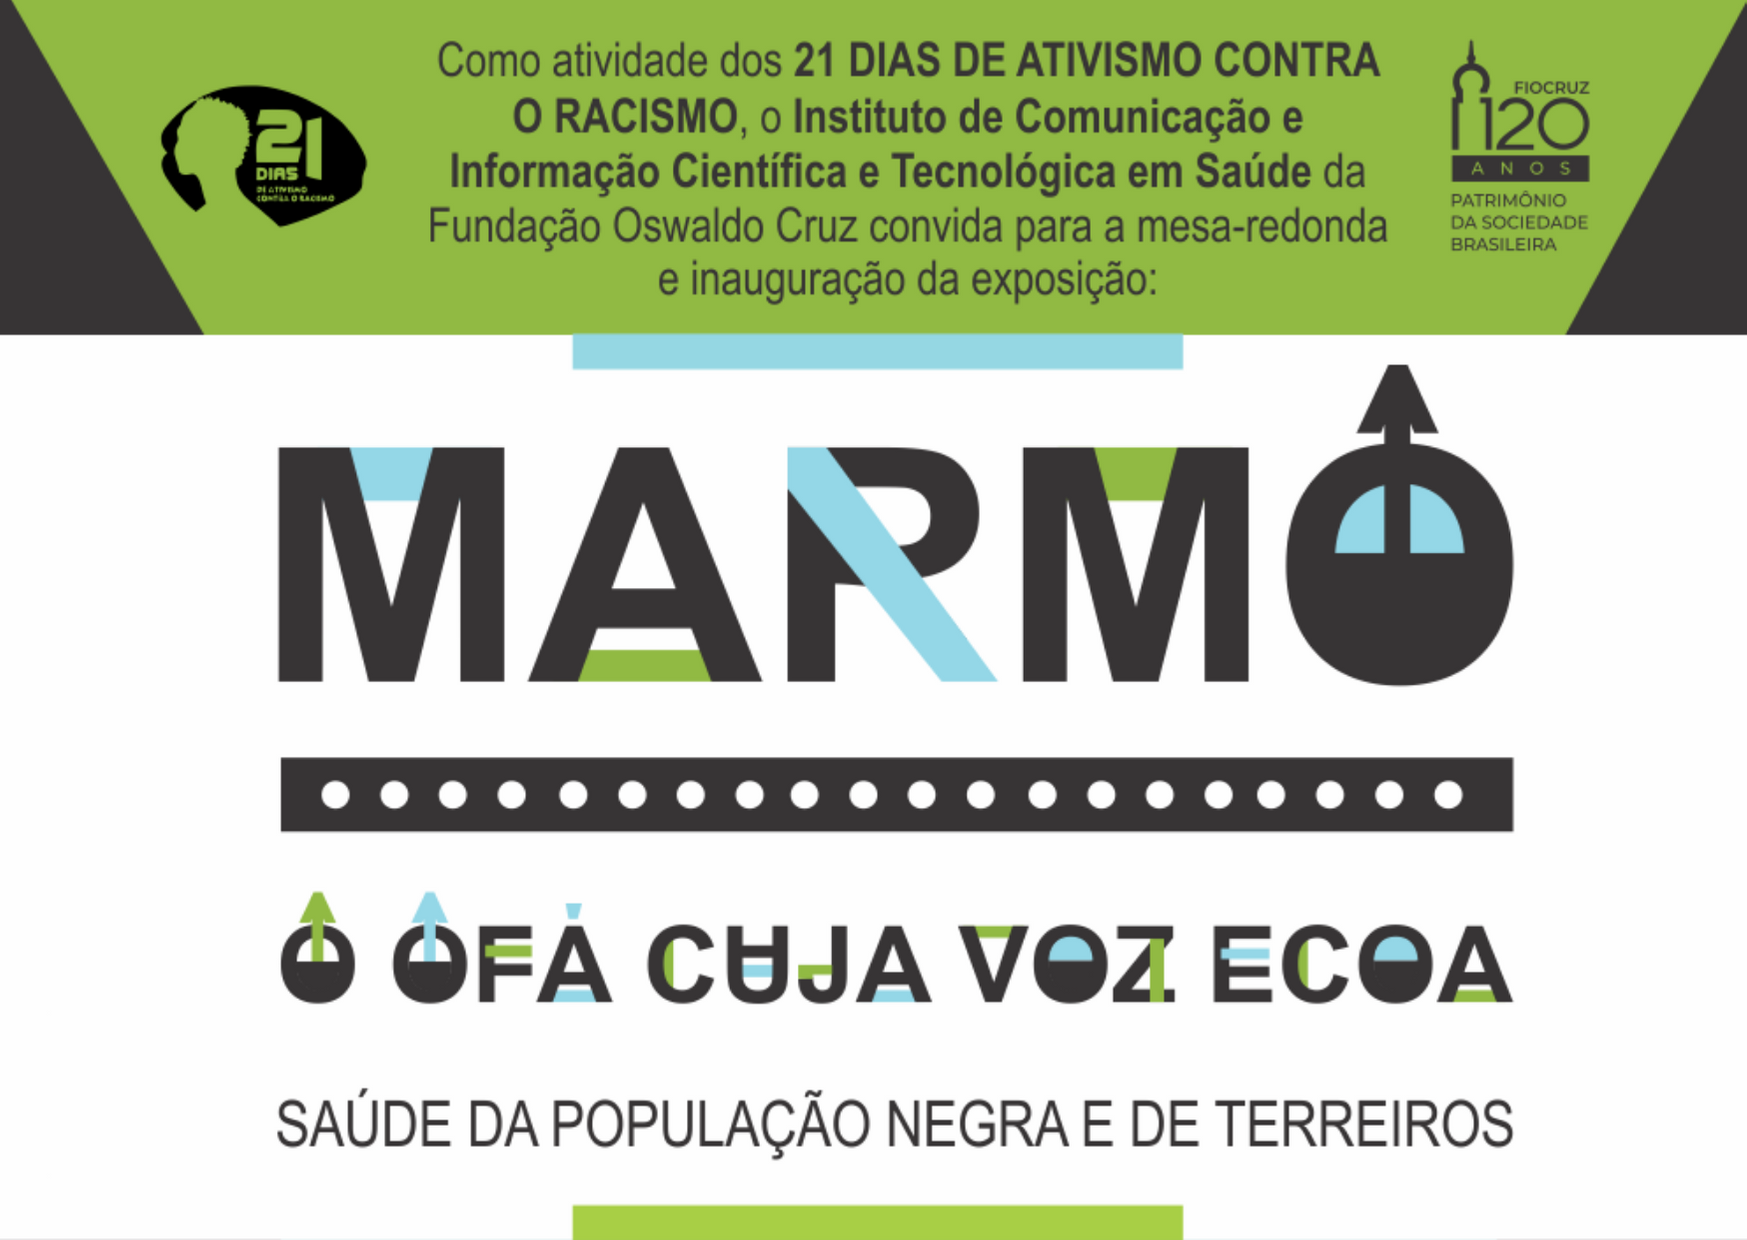 ‘Marmo: o ofá cuja voz ecoa’ revela trajetória do educador José Marmo, um líder na luta pela saúde da população negra no Brasil